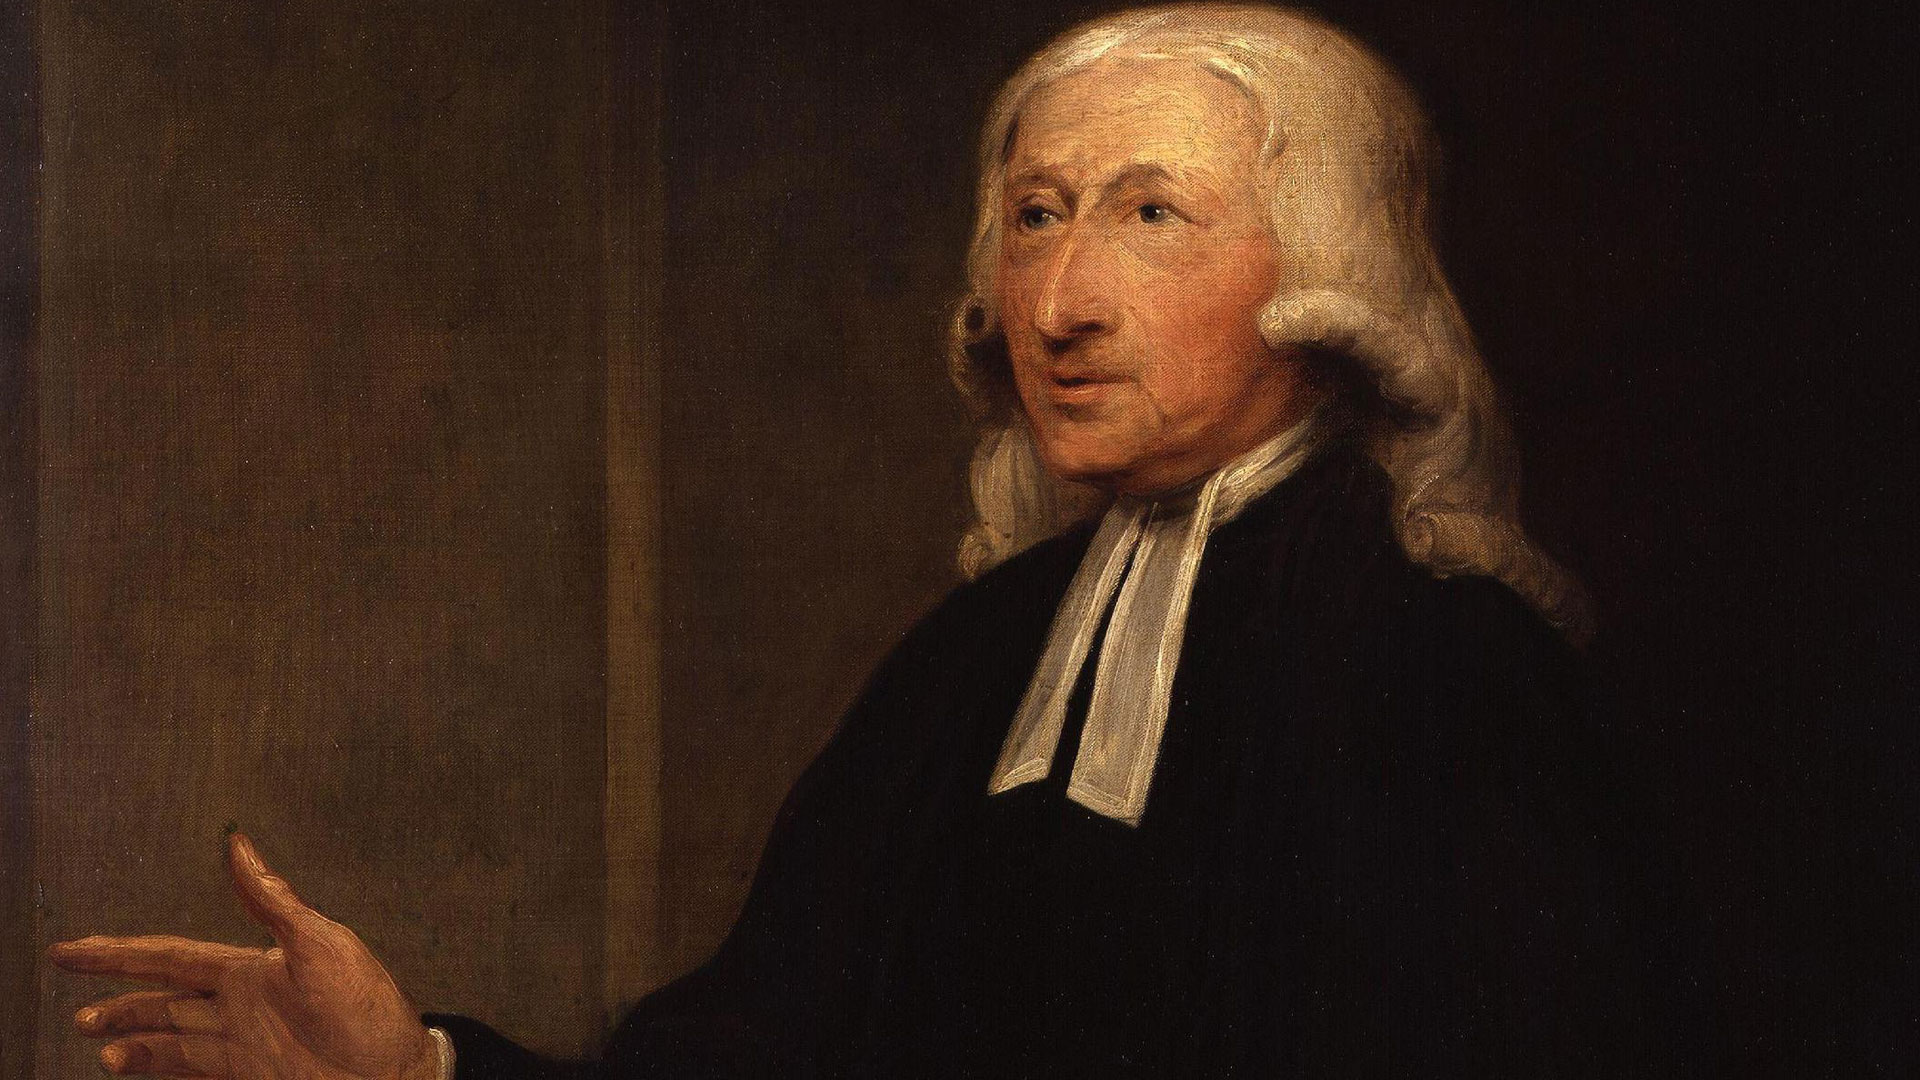 John Wesley gilt als Gründervater der methodistischen Glaubensbewegung. Jetzt steht der Kirche eine Spaltung bevor.